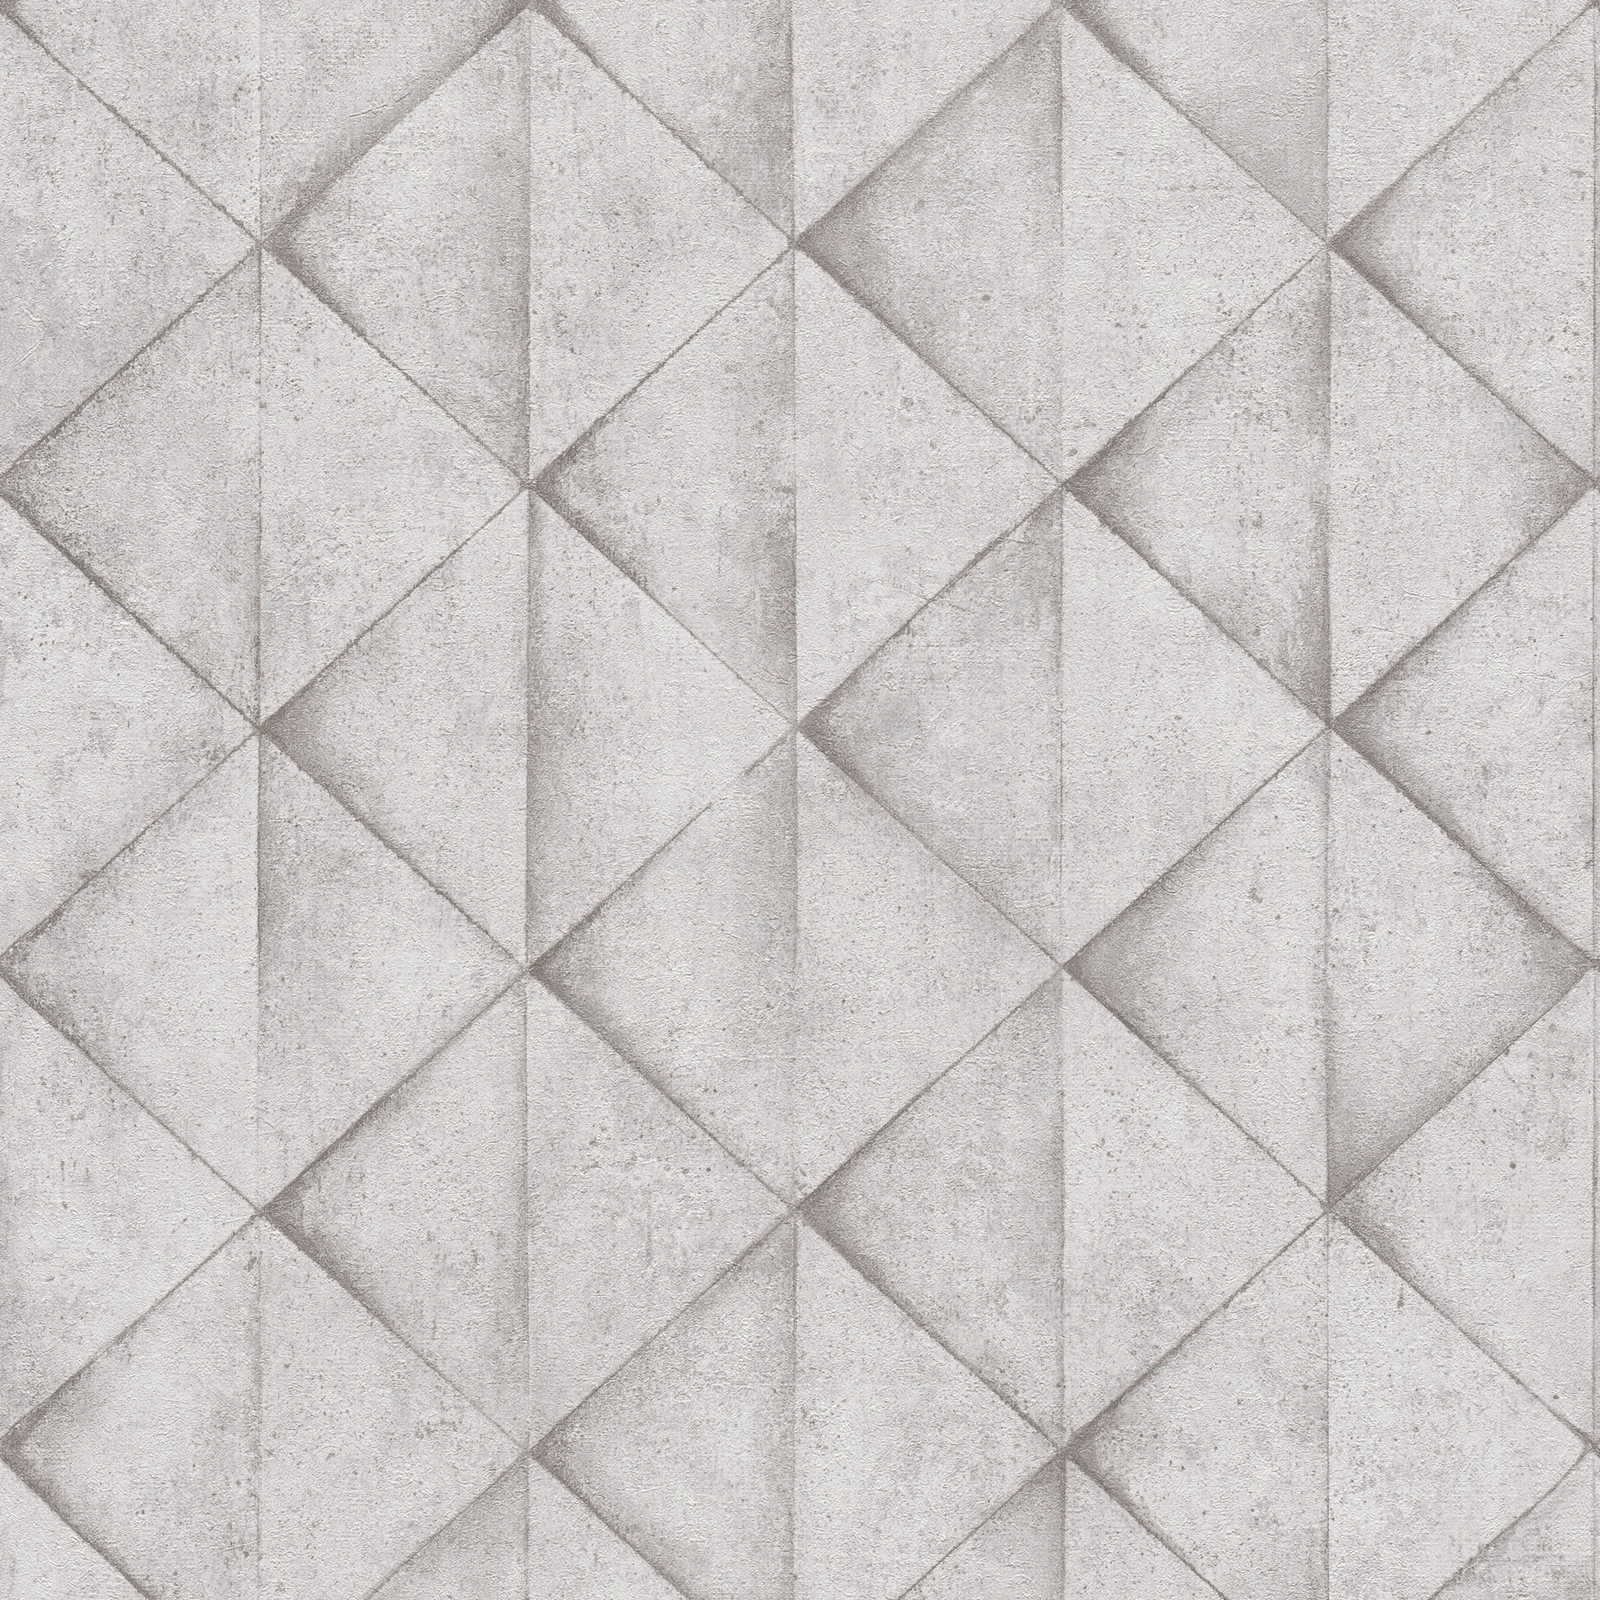         Betonoptik Tapete Kachel-Muster, 3D Used Look – Grau, Weiß
    